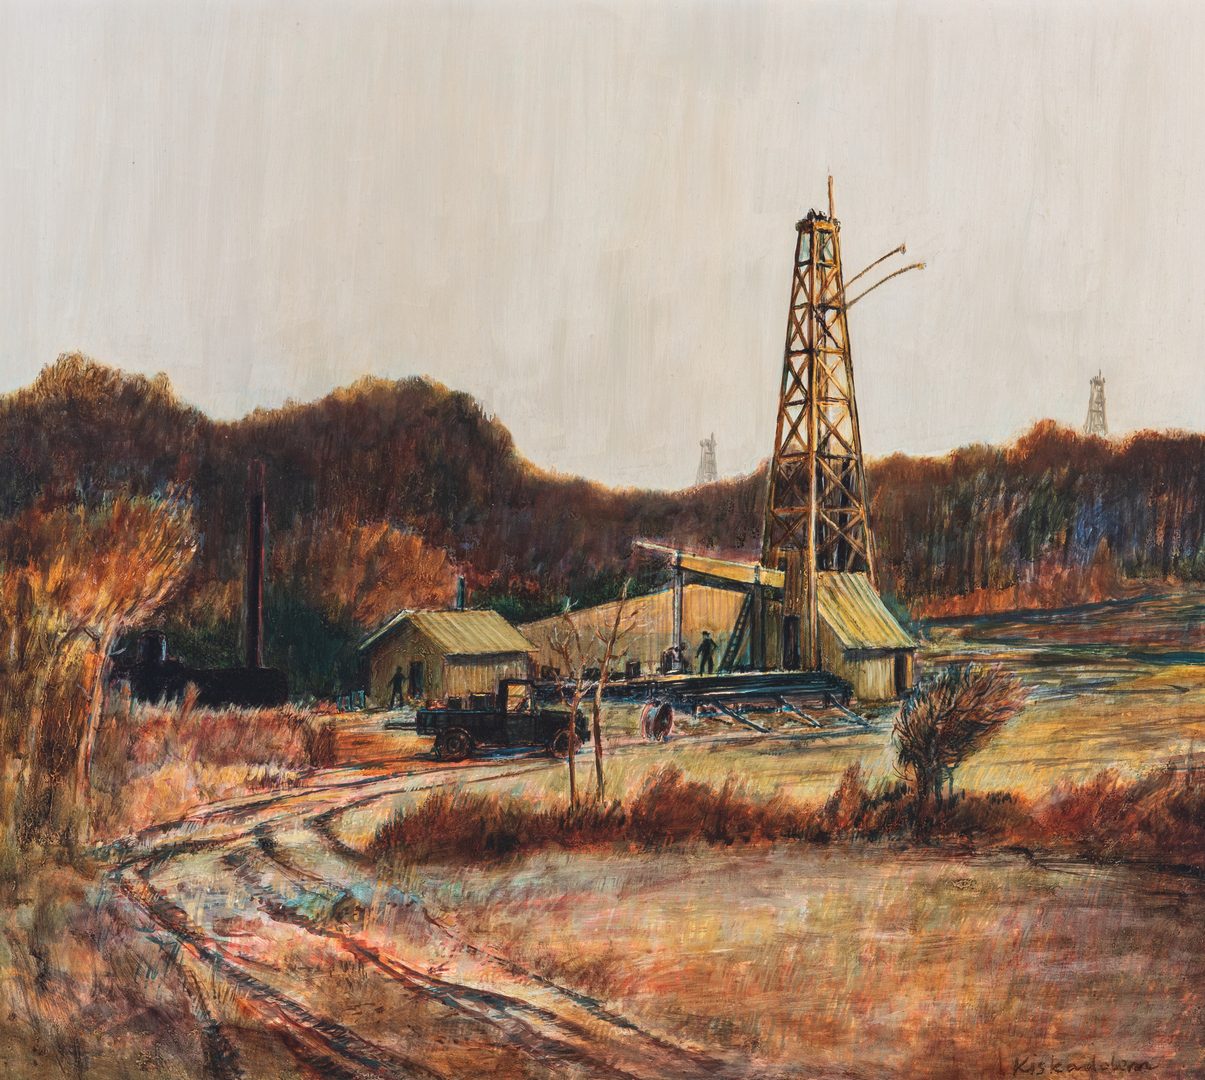 Lot 132: Robert Kiskadden O/B, Landscape with Oil Well